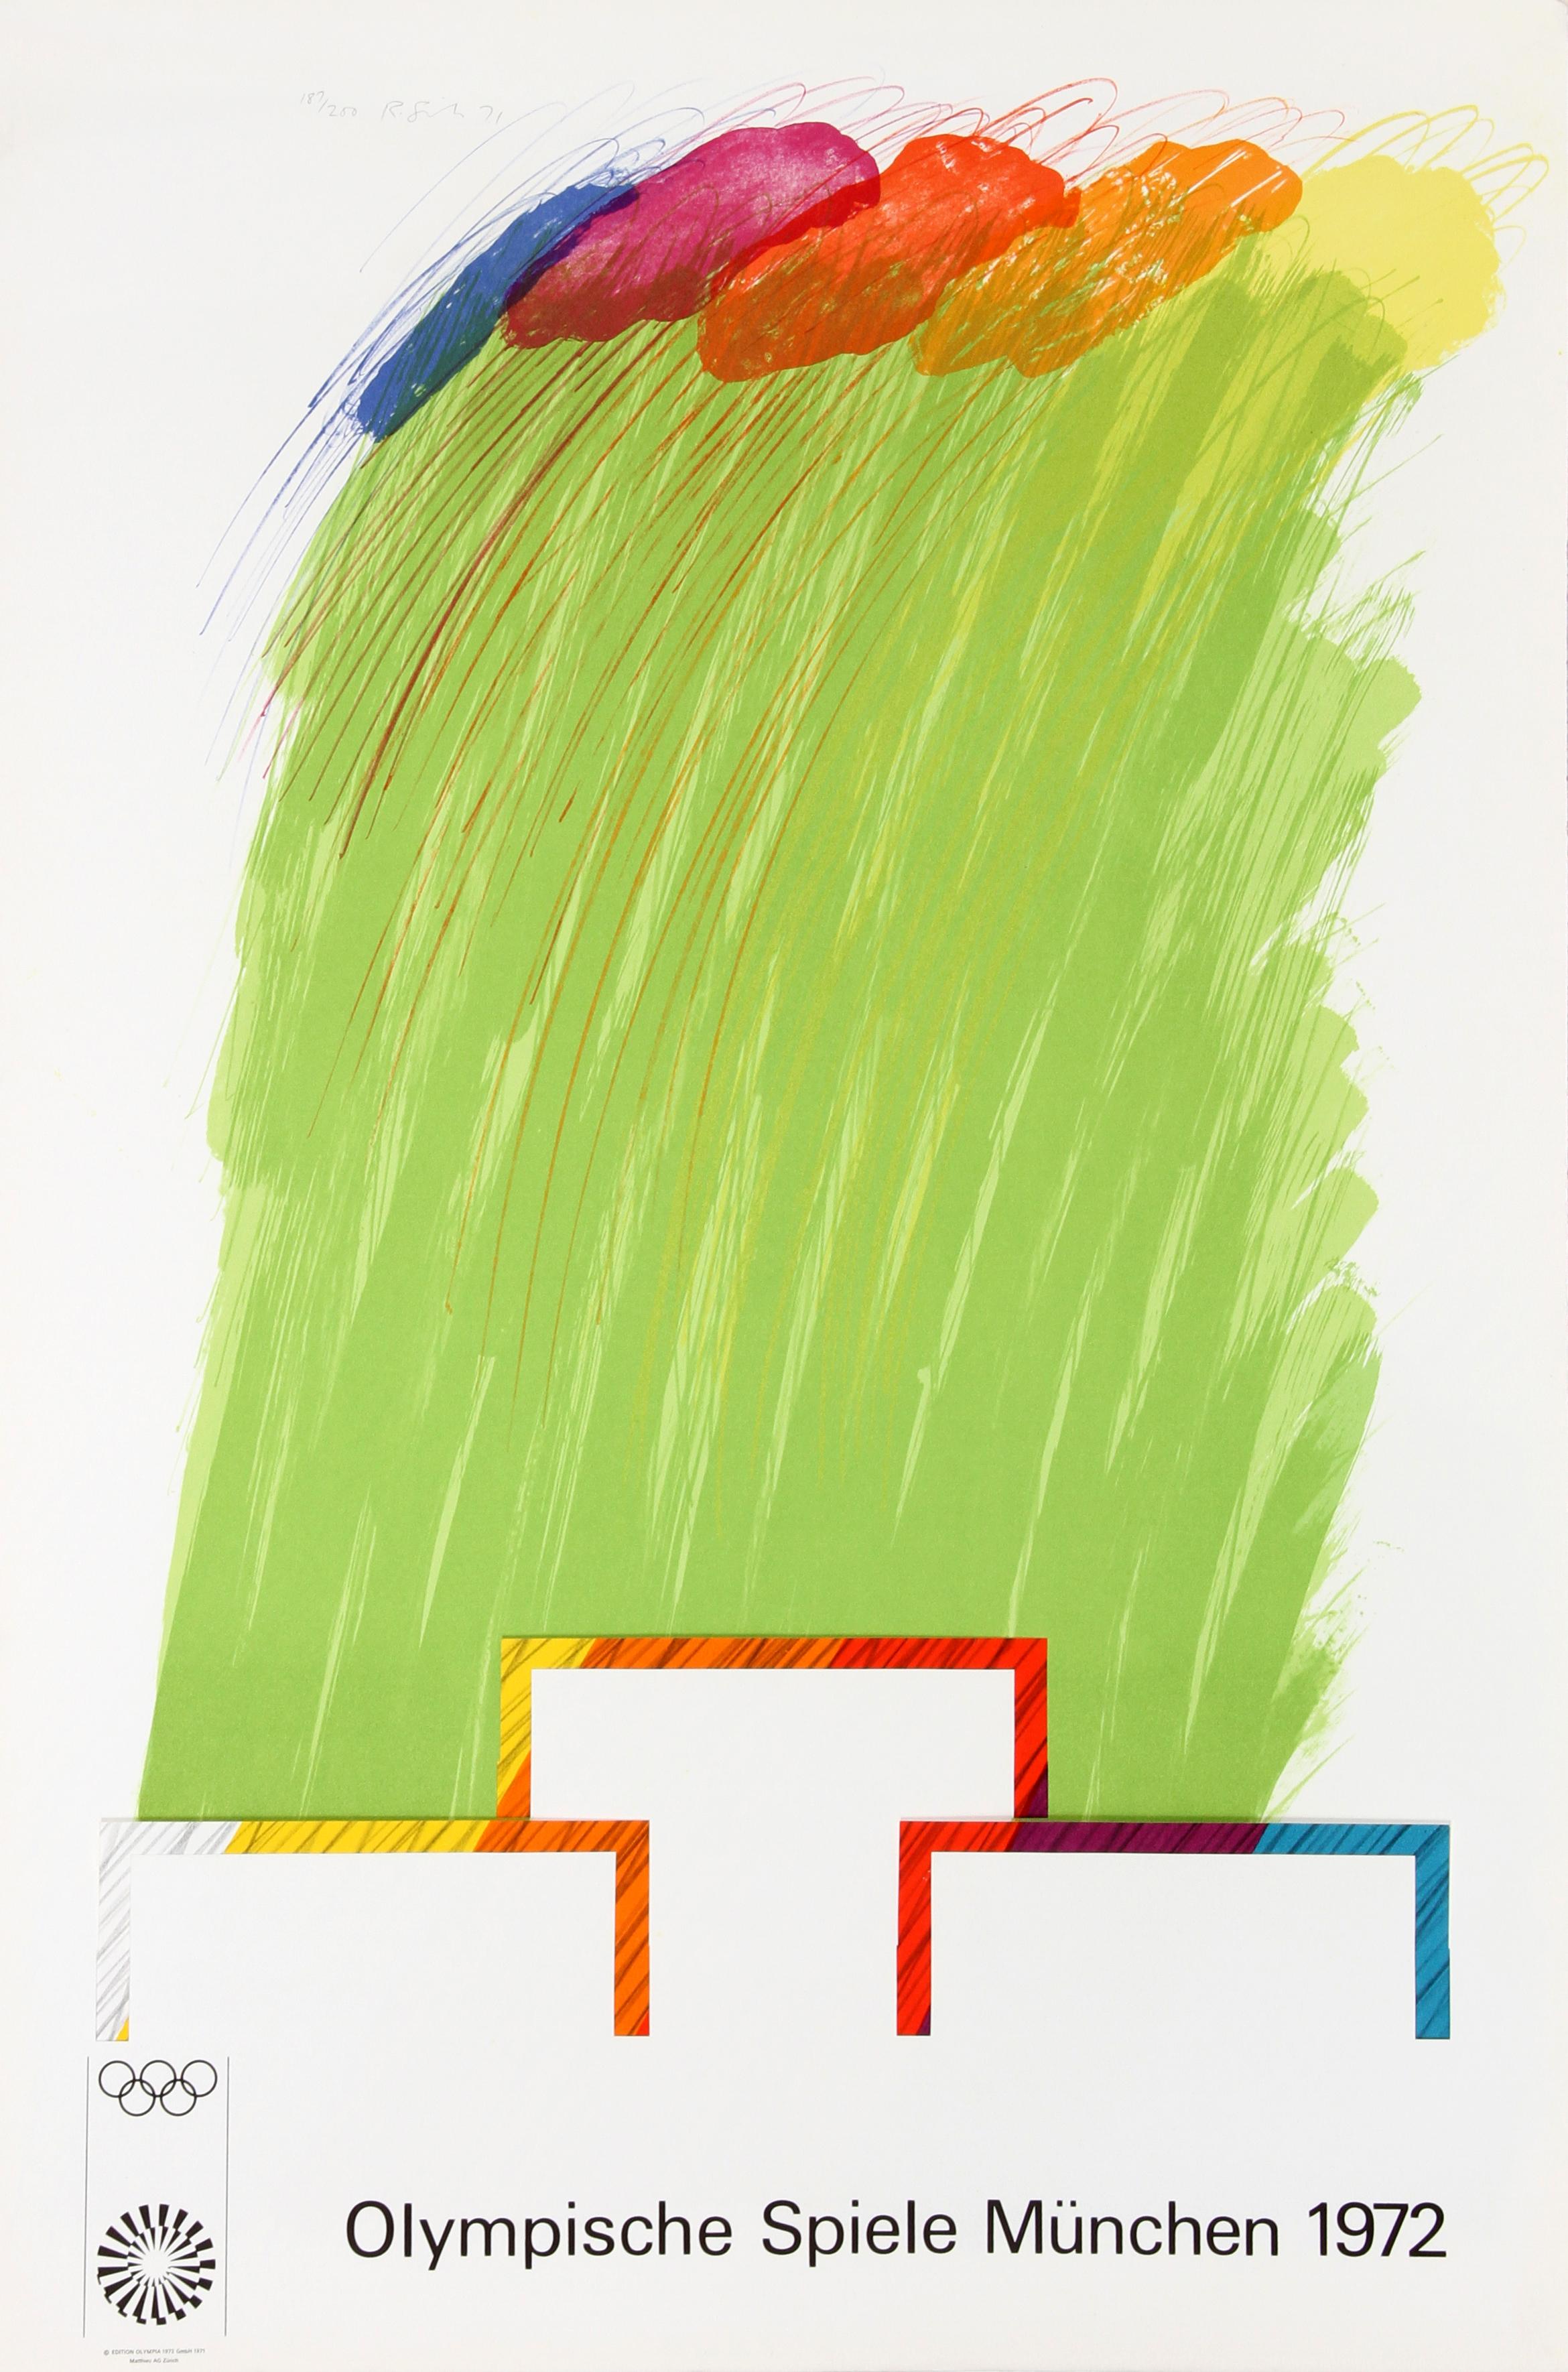 Artiste : Richard Smith, britannique (1931 - 2016)
Titre : Jeux olympiques de Munich 1972
Année : 1971
Moyen :	Lithographie avec collage, signée et numérotée au crayon
Edition : 200
Taille : 41,5 x 28 pouces (105,41 x 70,12 cm)